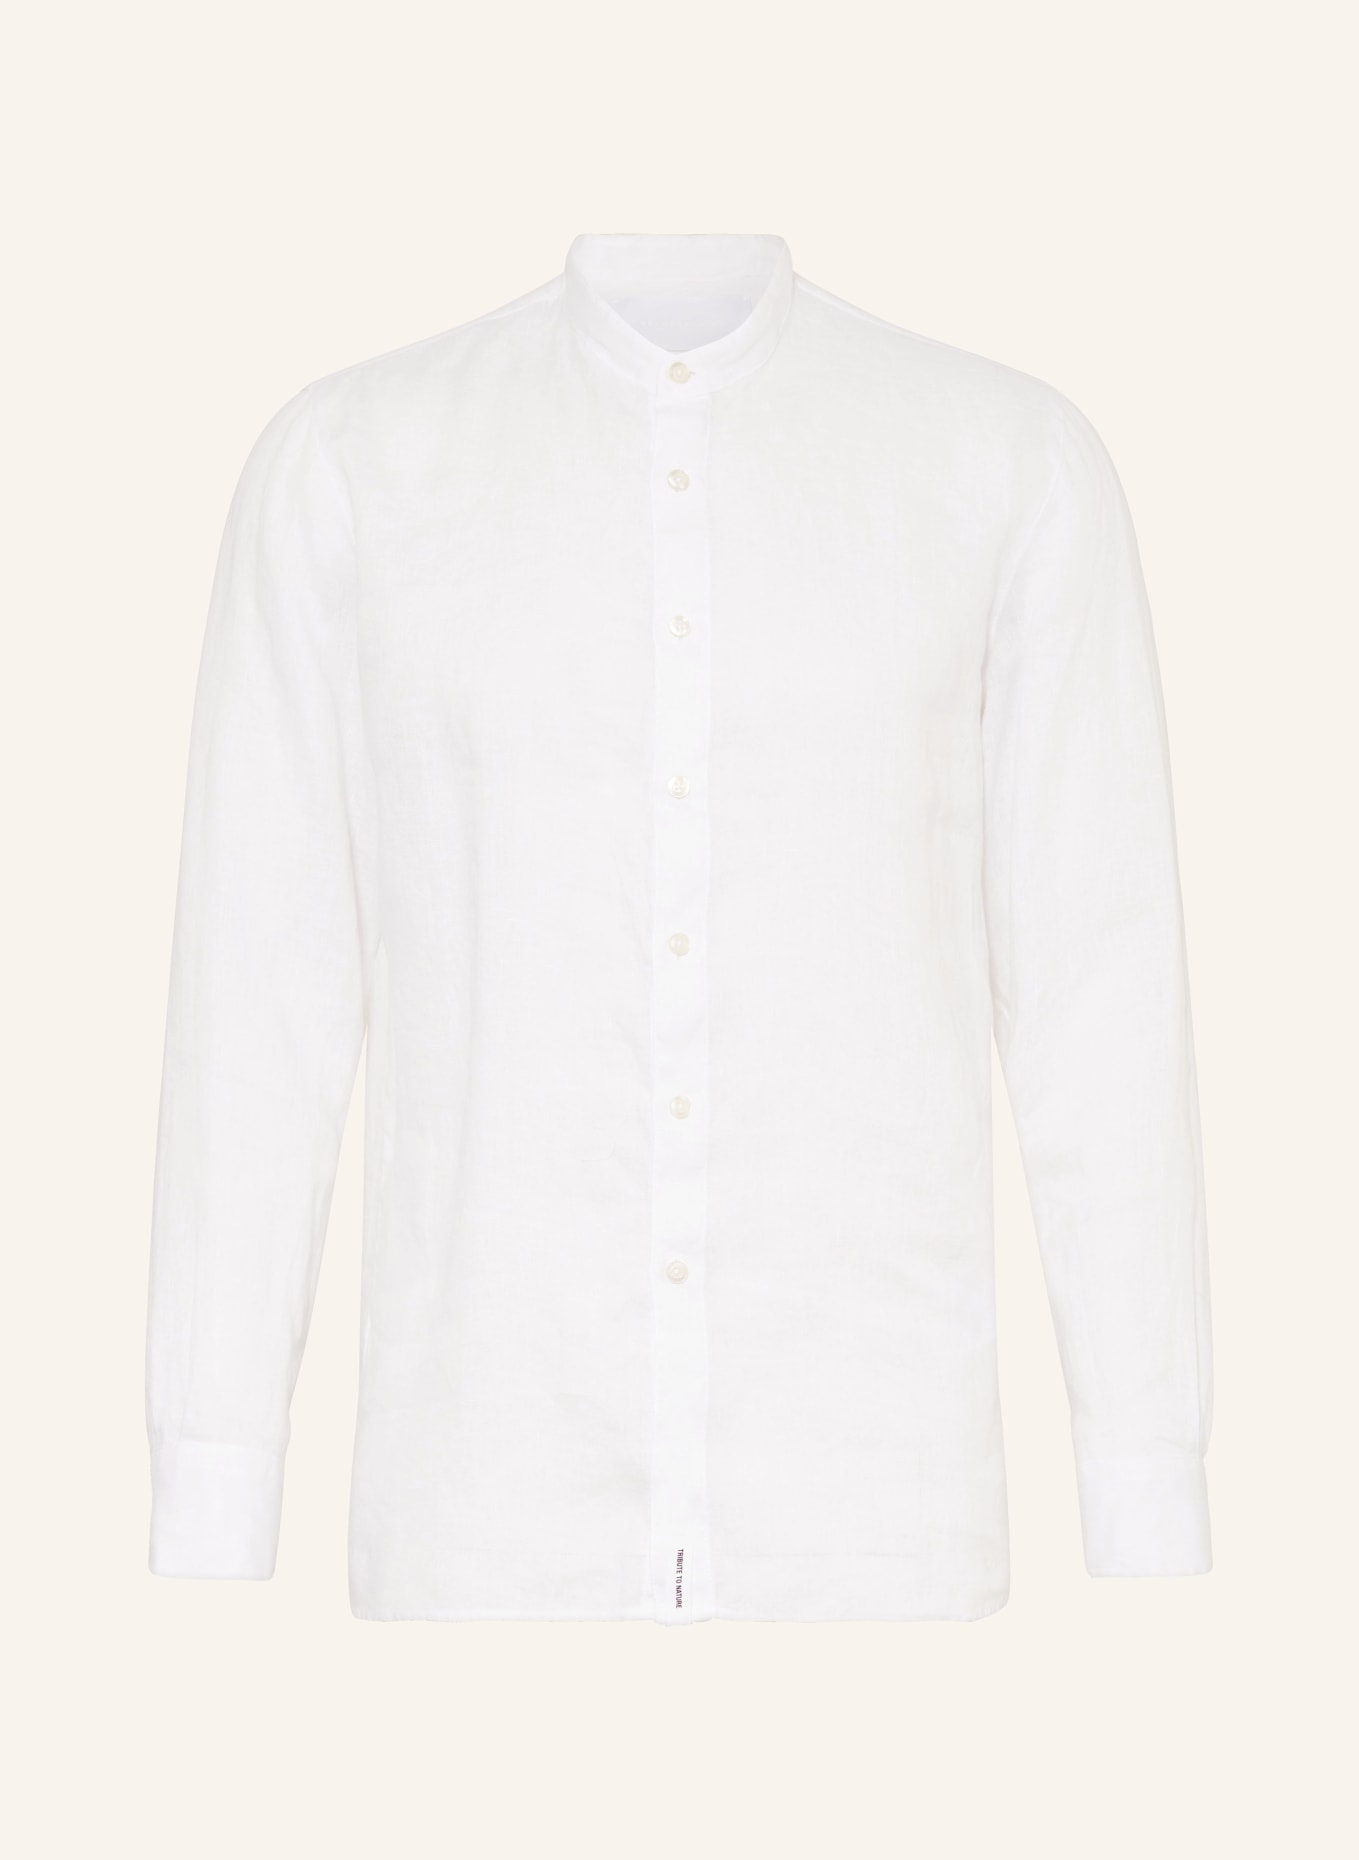 BALDESSARINI Leinenhemd Regular Fit mit Stehkragen, Farbe: WEISS (Bild 1)